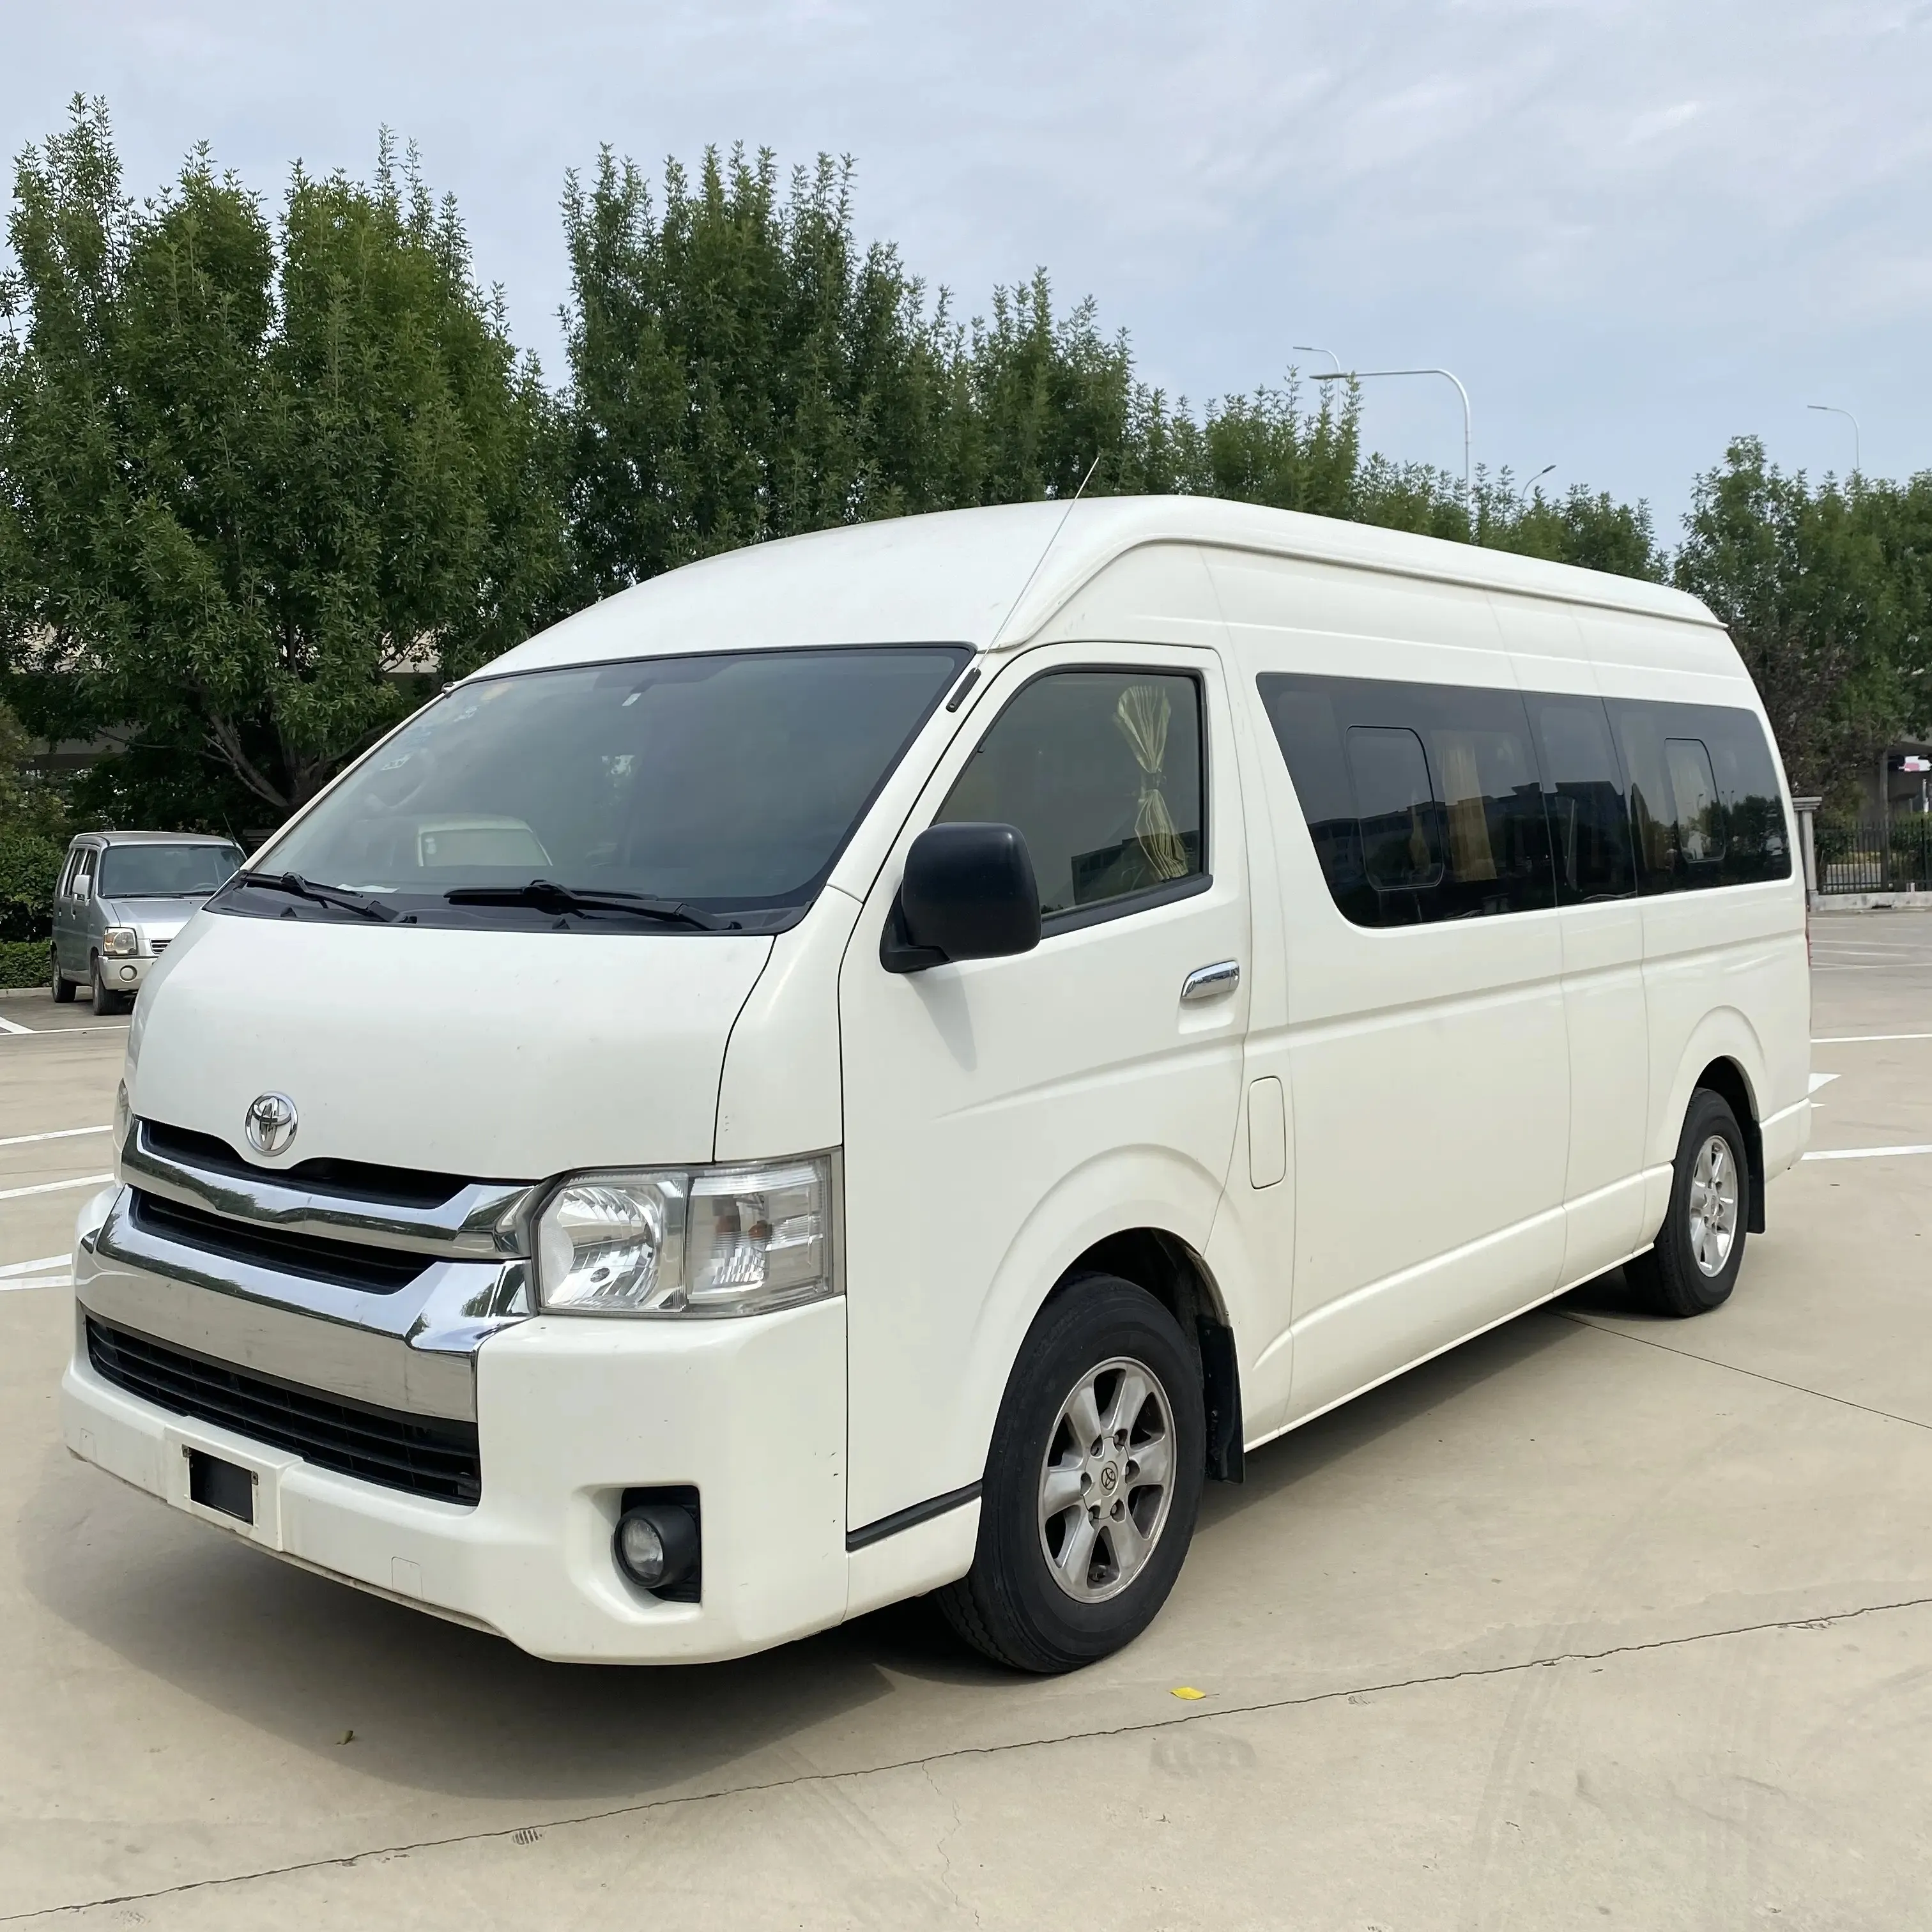 Promosyon fiyat Toyota Hiace Mini otobüs kullanılan otobüs benzin Mini Van satılık